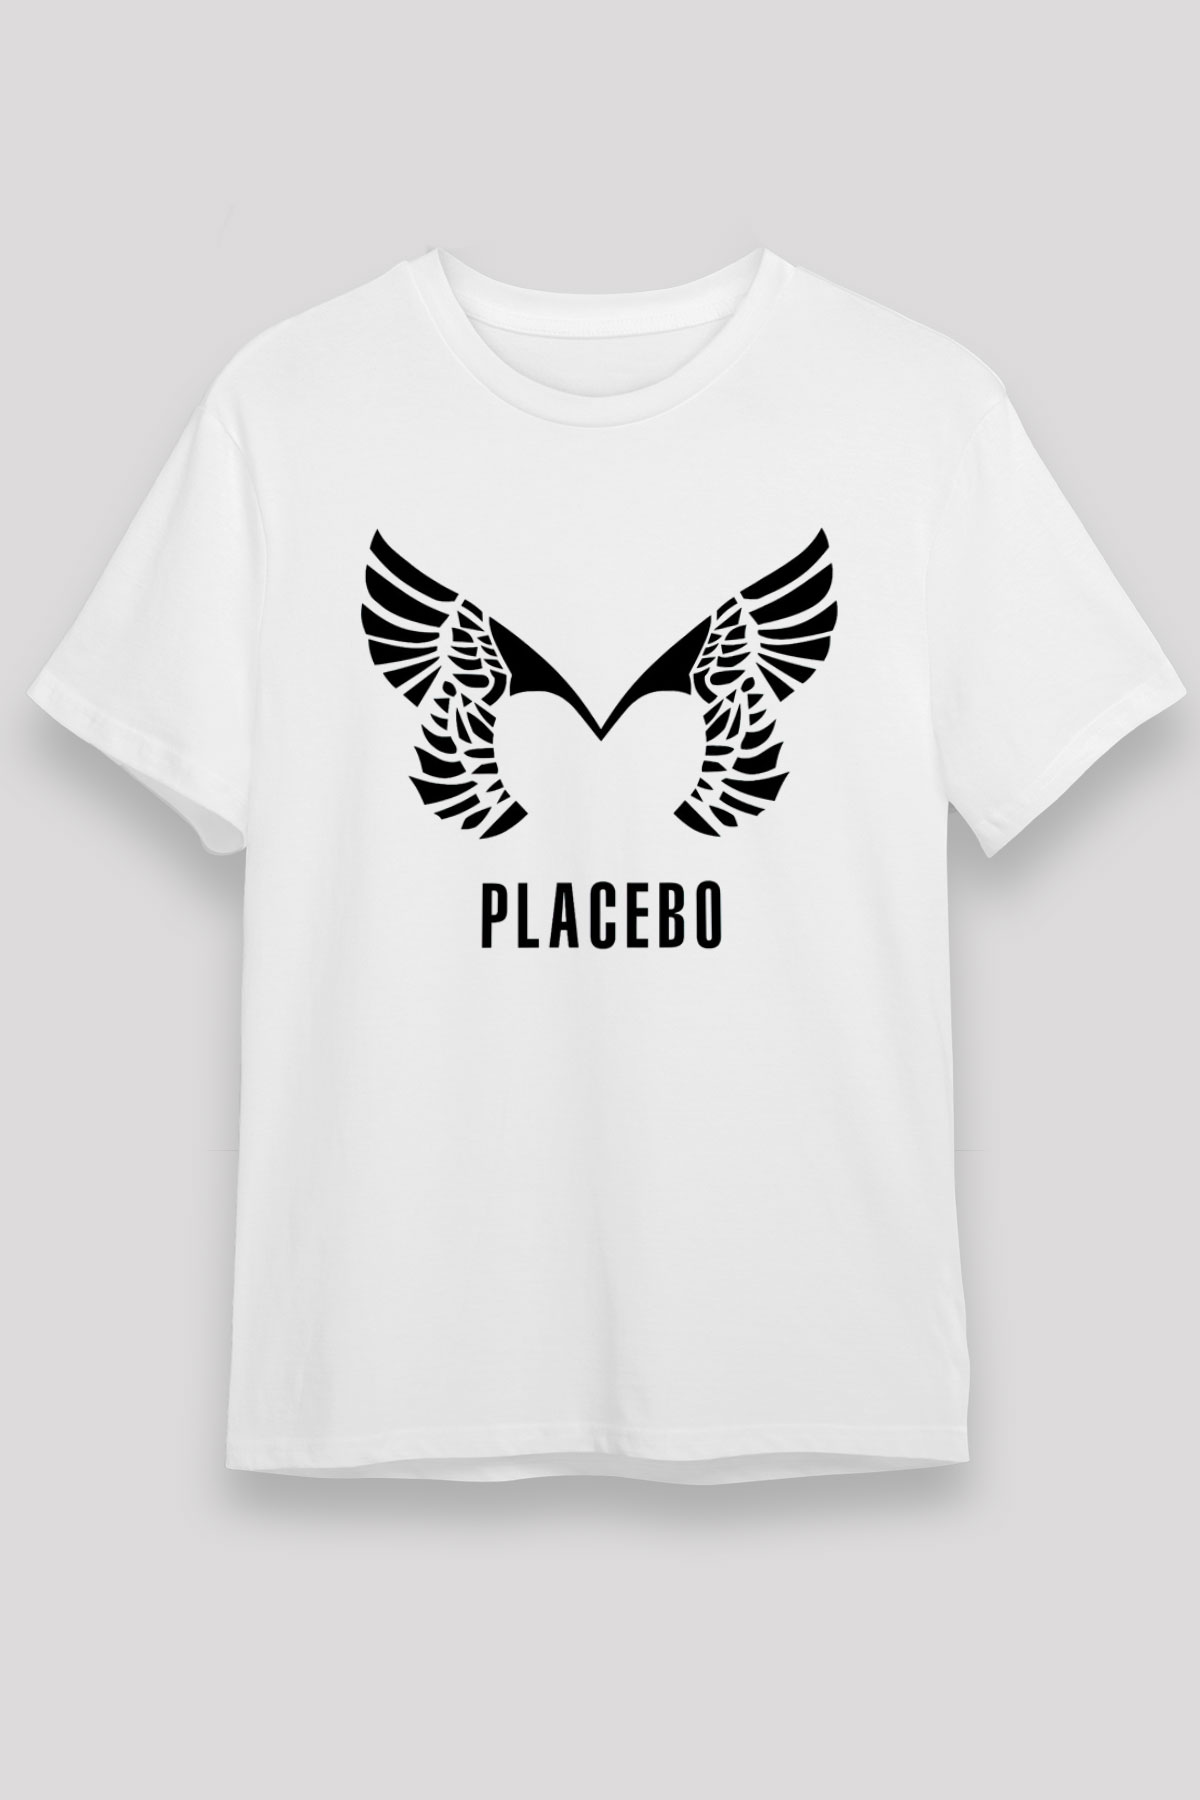 Placebo White Unisex T-Shirt - Tees - Shirts